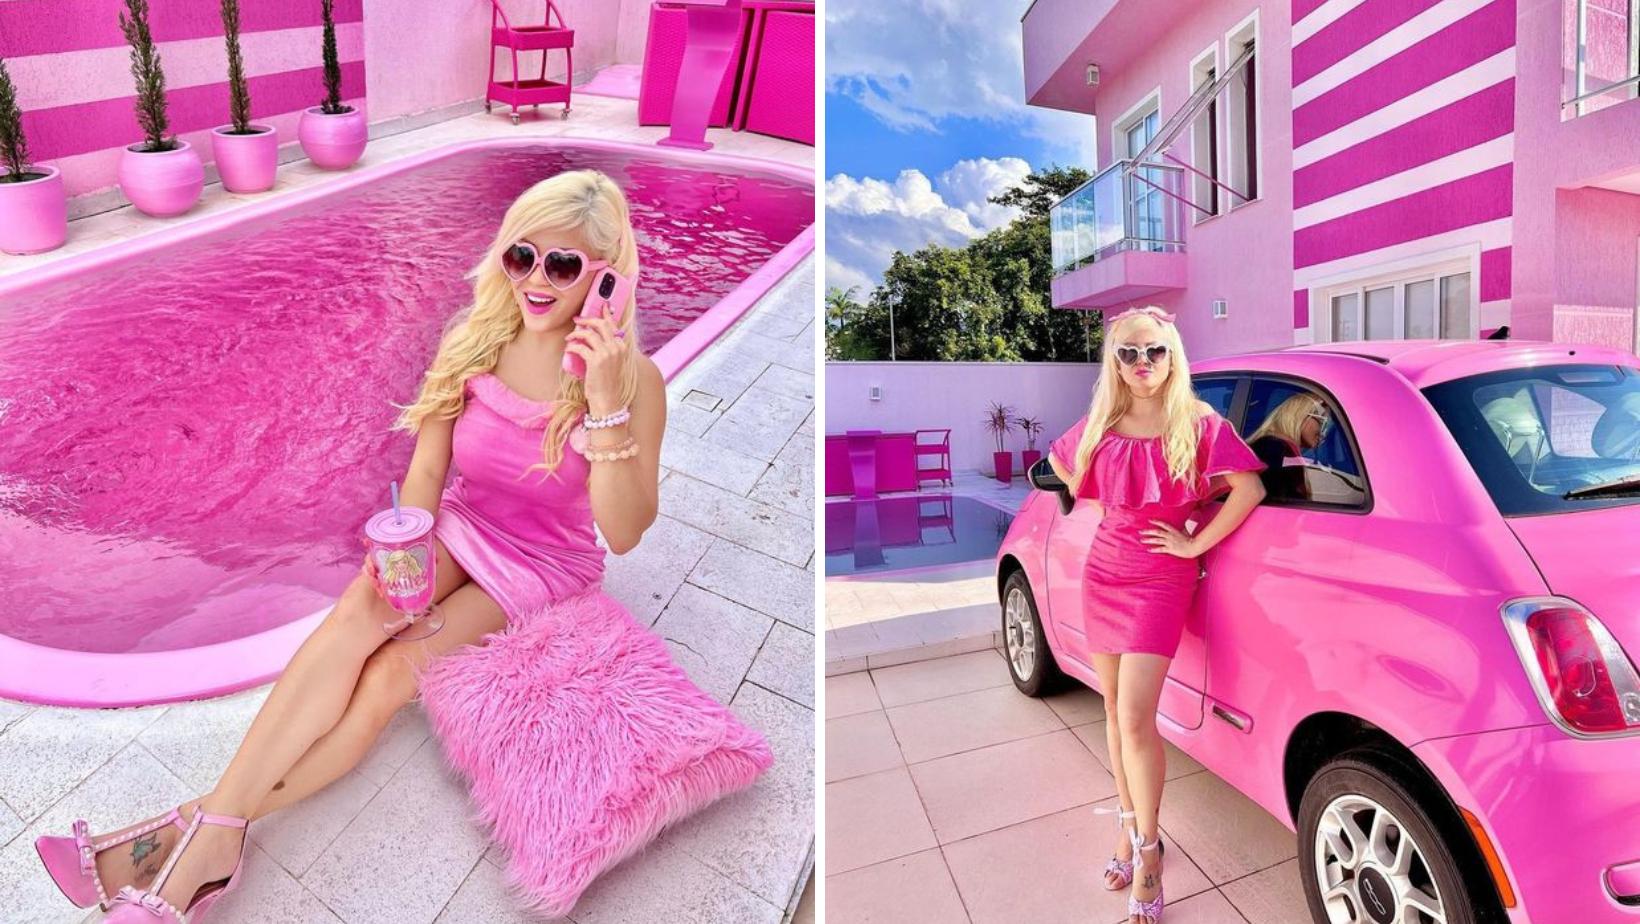 "Живая Барби" из Бразилии превратила свой особняк, включая бассейн, в розовый рай